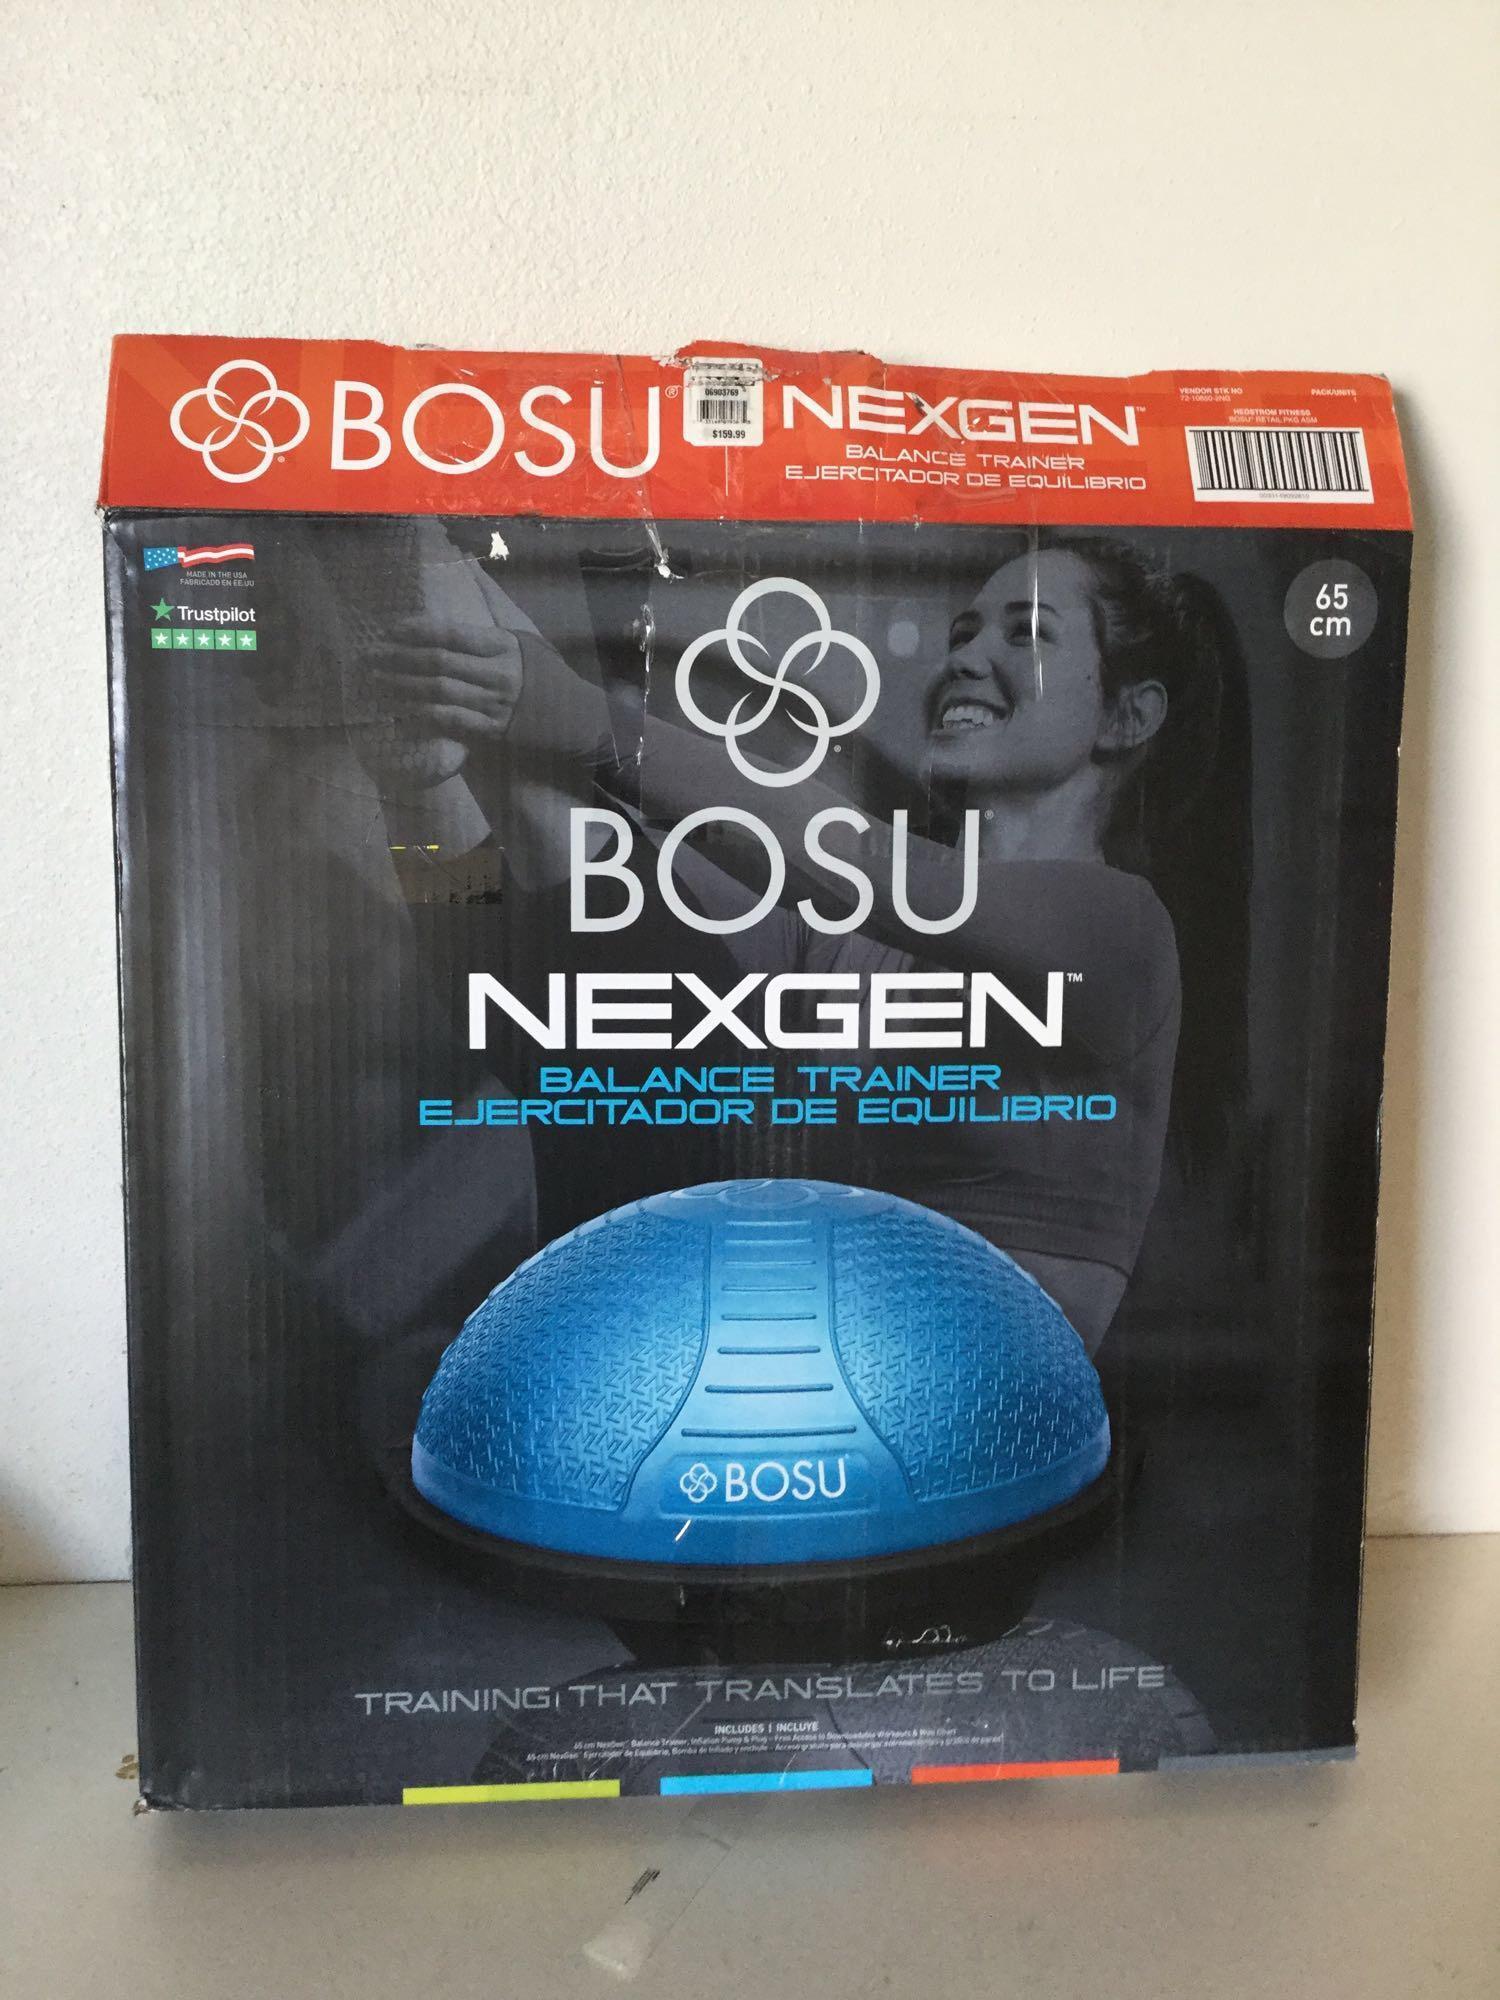 BOSU NexGen Balance Trainer, Blue (6903769) - $159.99 MSRP